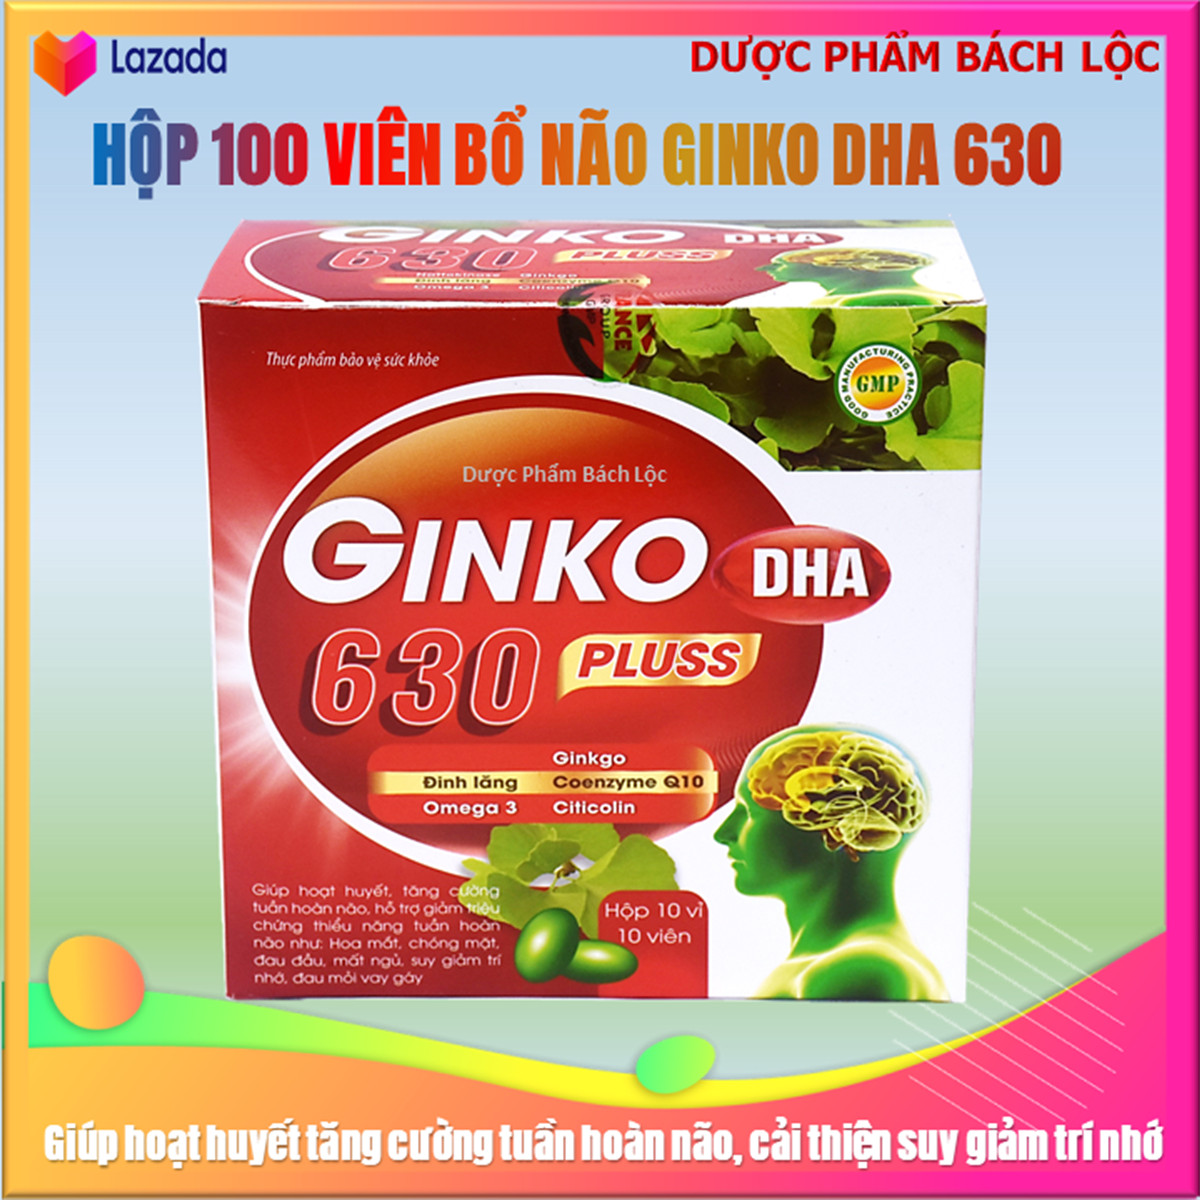 VIên uống bổ não Ginko DHA 630 pluss - France Group